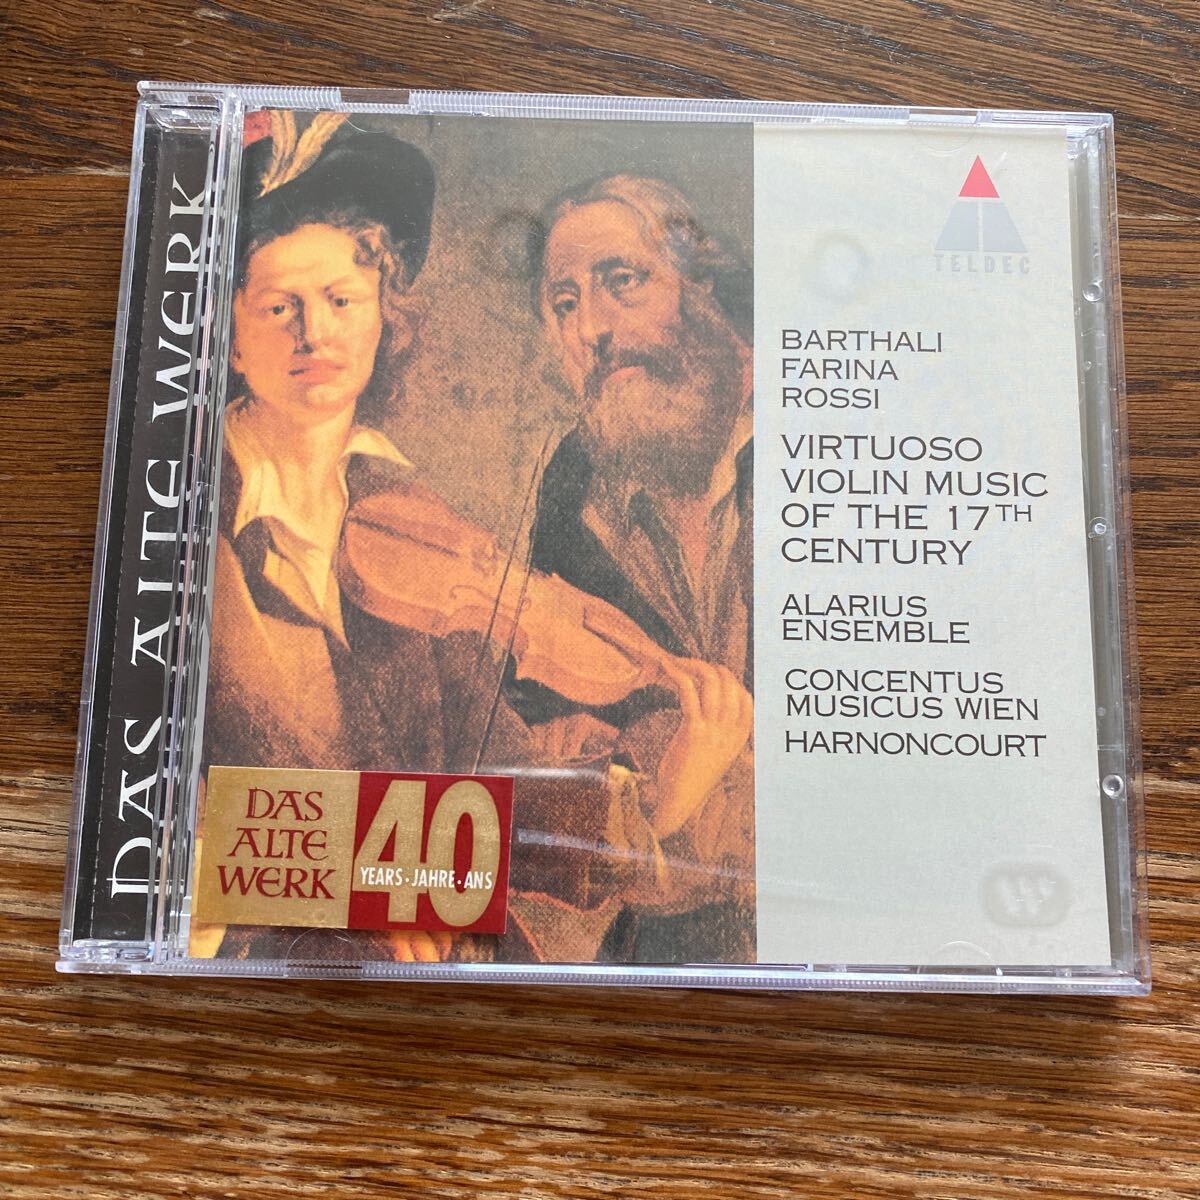 中古CD 17世紀のヴァイオリン名曲集 ベルターリ ファリーナ ロッシ アラリウス・アンサンブル VIRTUOSO VIOLIN MUSIC OF THE 17TH CENTURY_画像1